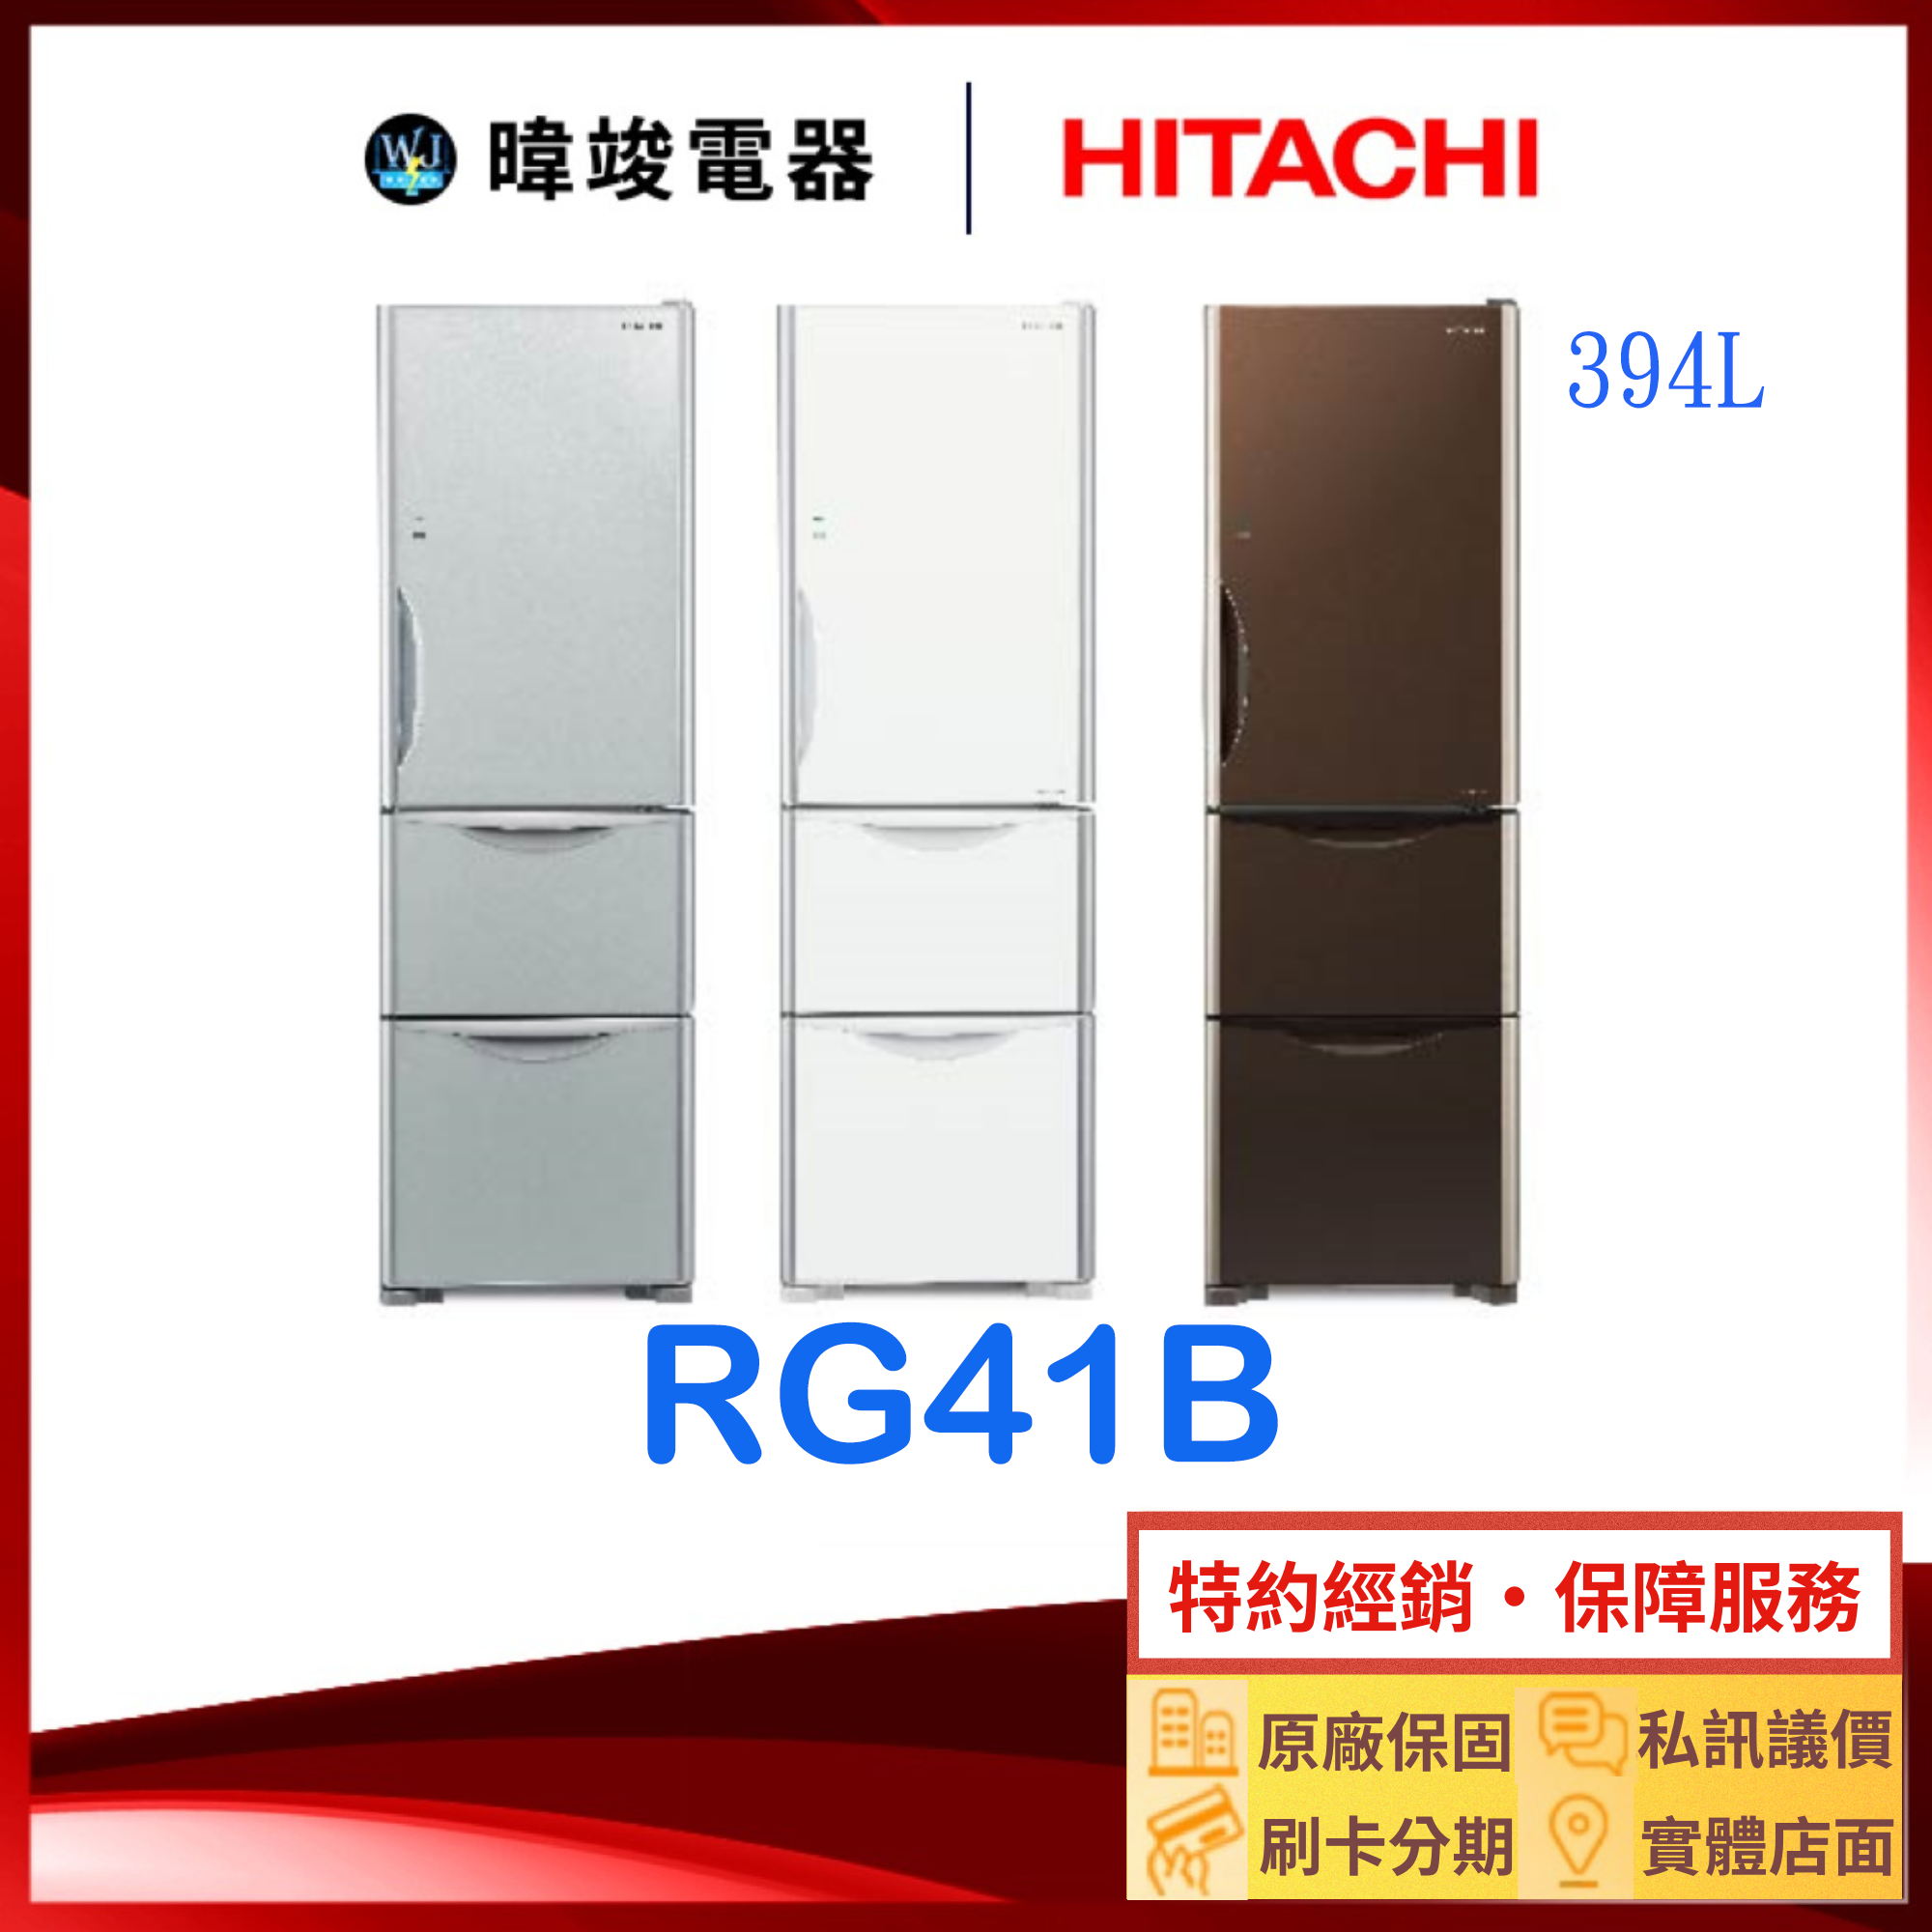 有現貨【送基本安裝】HITACHI 日立 R-G41B 三門冰箱 RG41B 1級能源效率 電冰箱 取代RG41A